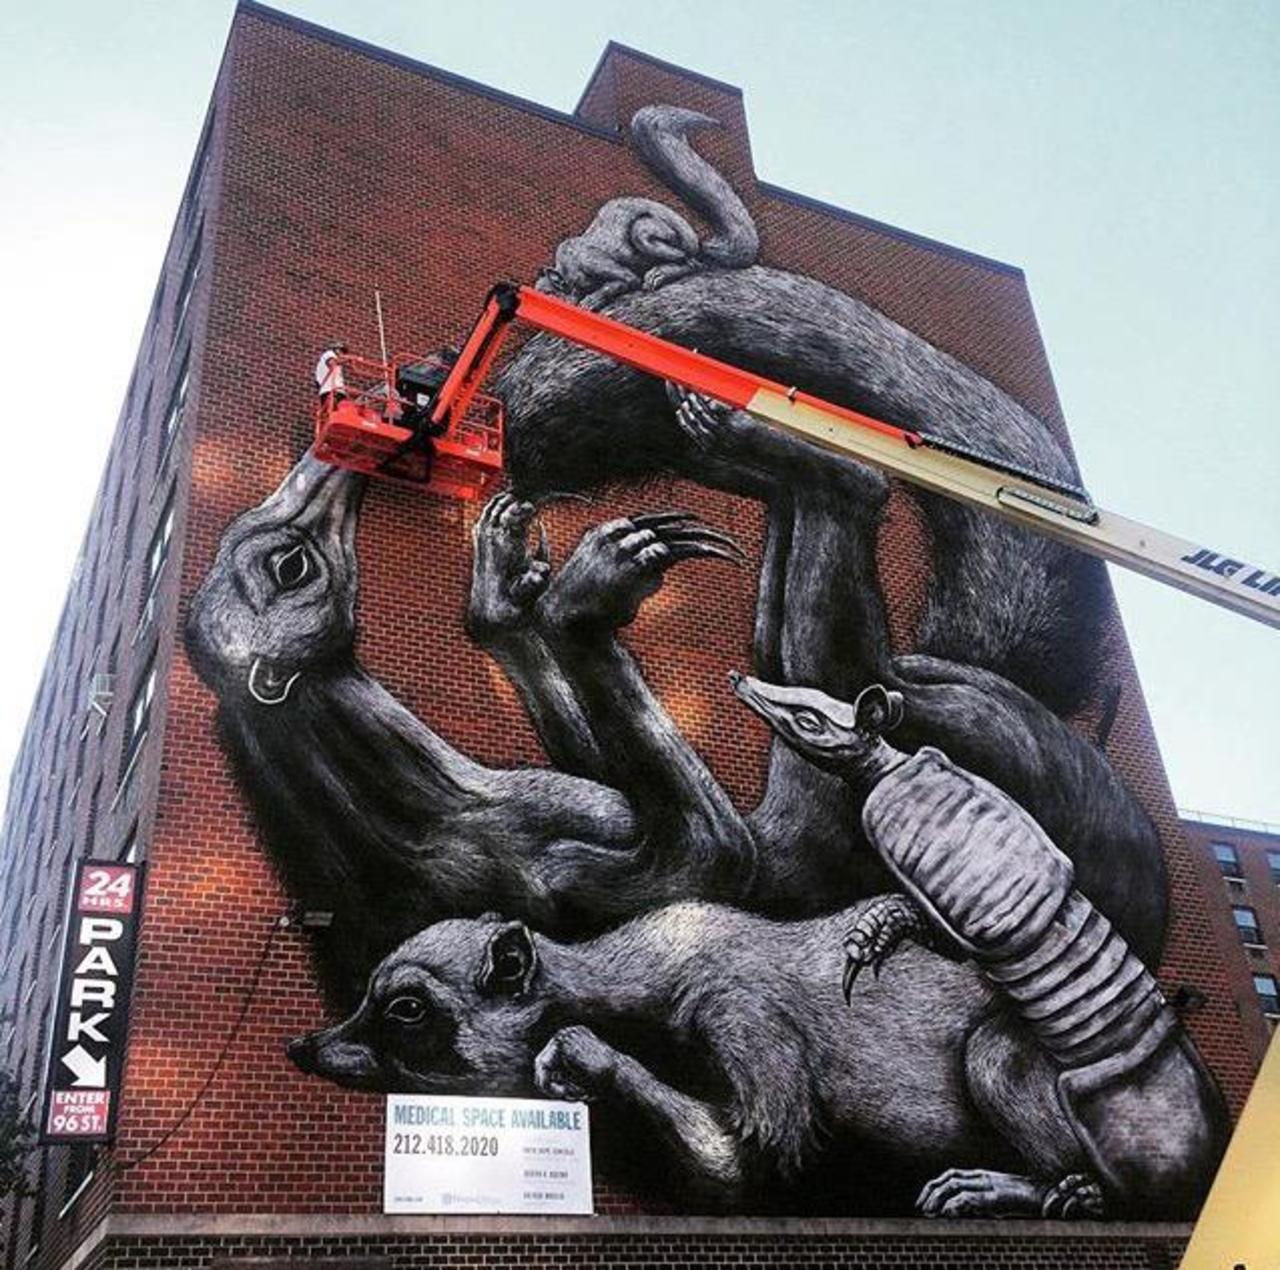 Street Art in progress by ROA in NYC

#art #graffiti #mural #streetart http://t.co/8vdwhibjU7